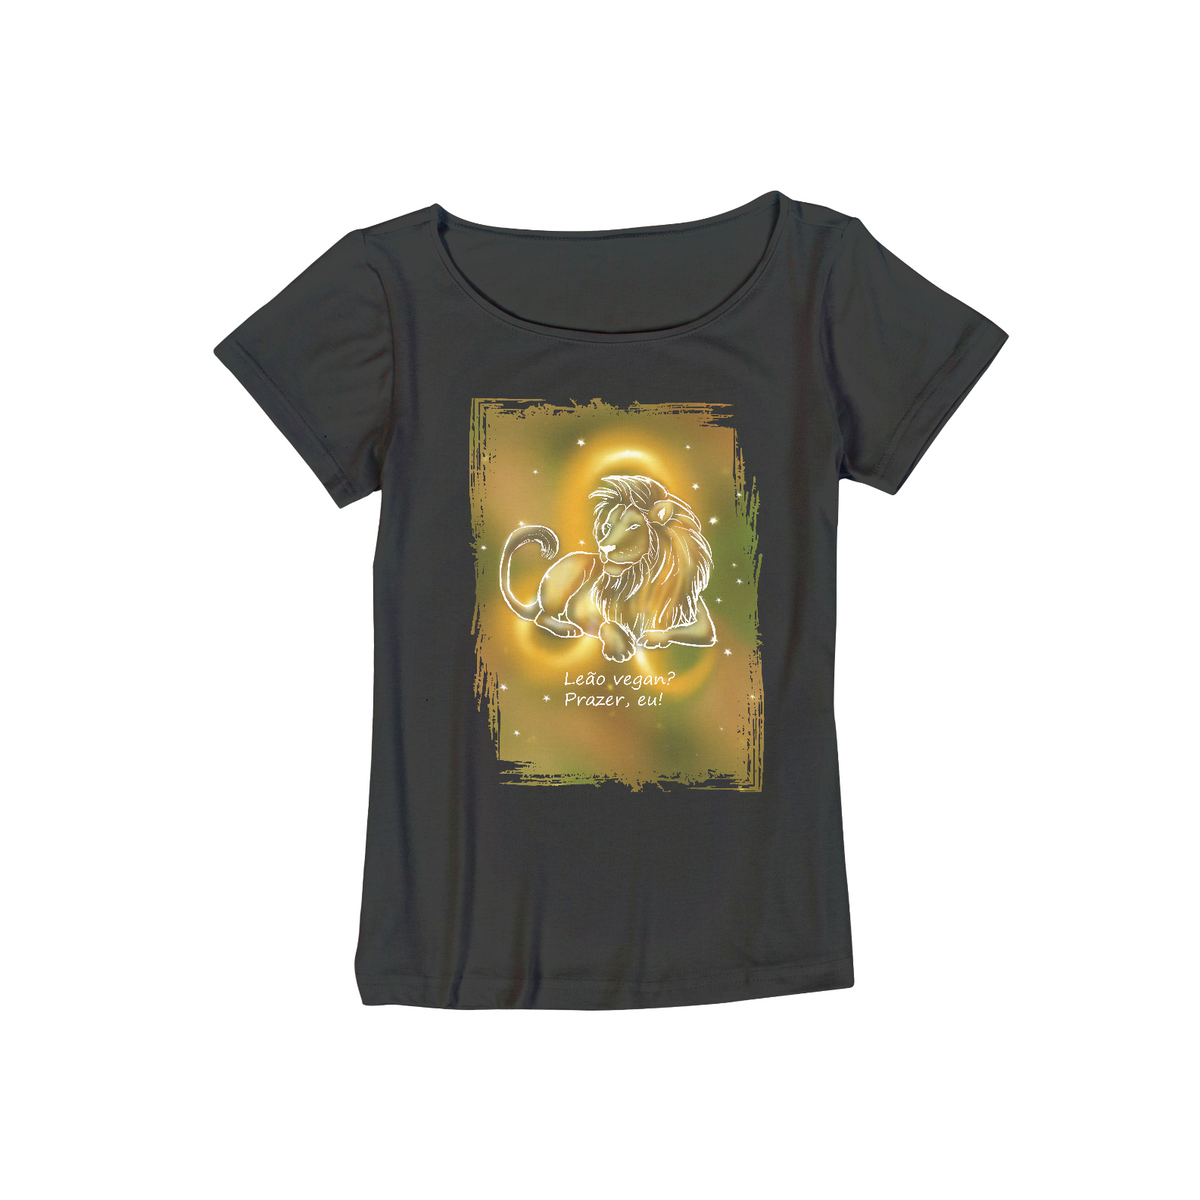 Nome do produto: Camiseta Viscolycra | Leão | Leão vegan? Prazer, eu! | Color